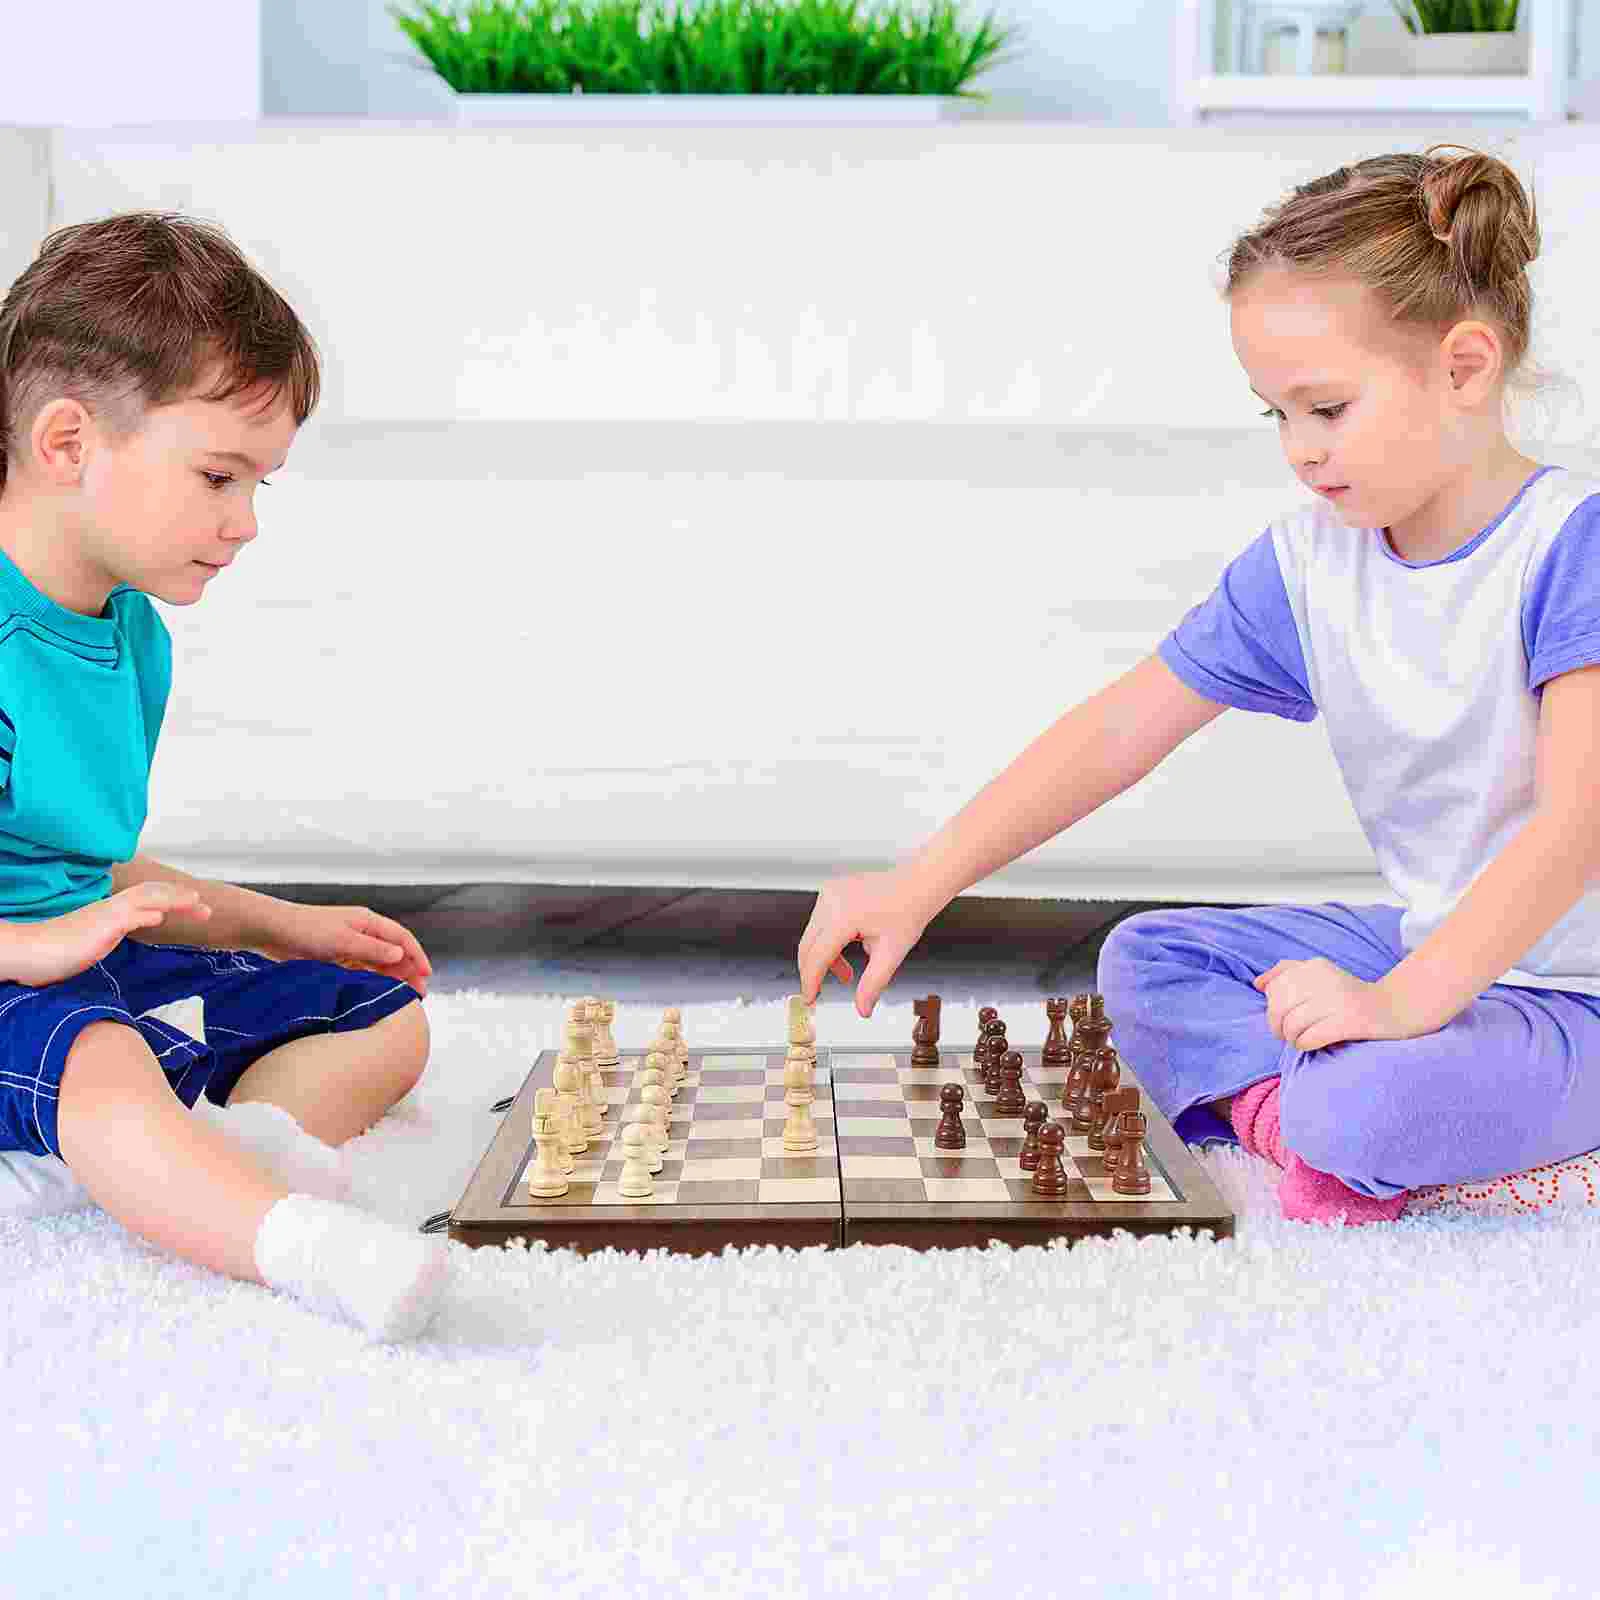 tabuleiro xadrez, Conjuntos xadrez viagem dobráveis portáteis com slots  armazenamento peças - Jogo Tabuleiro Internacional para Crianças Adulto  Riastvy